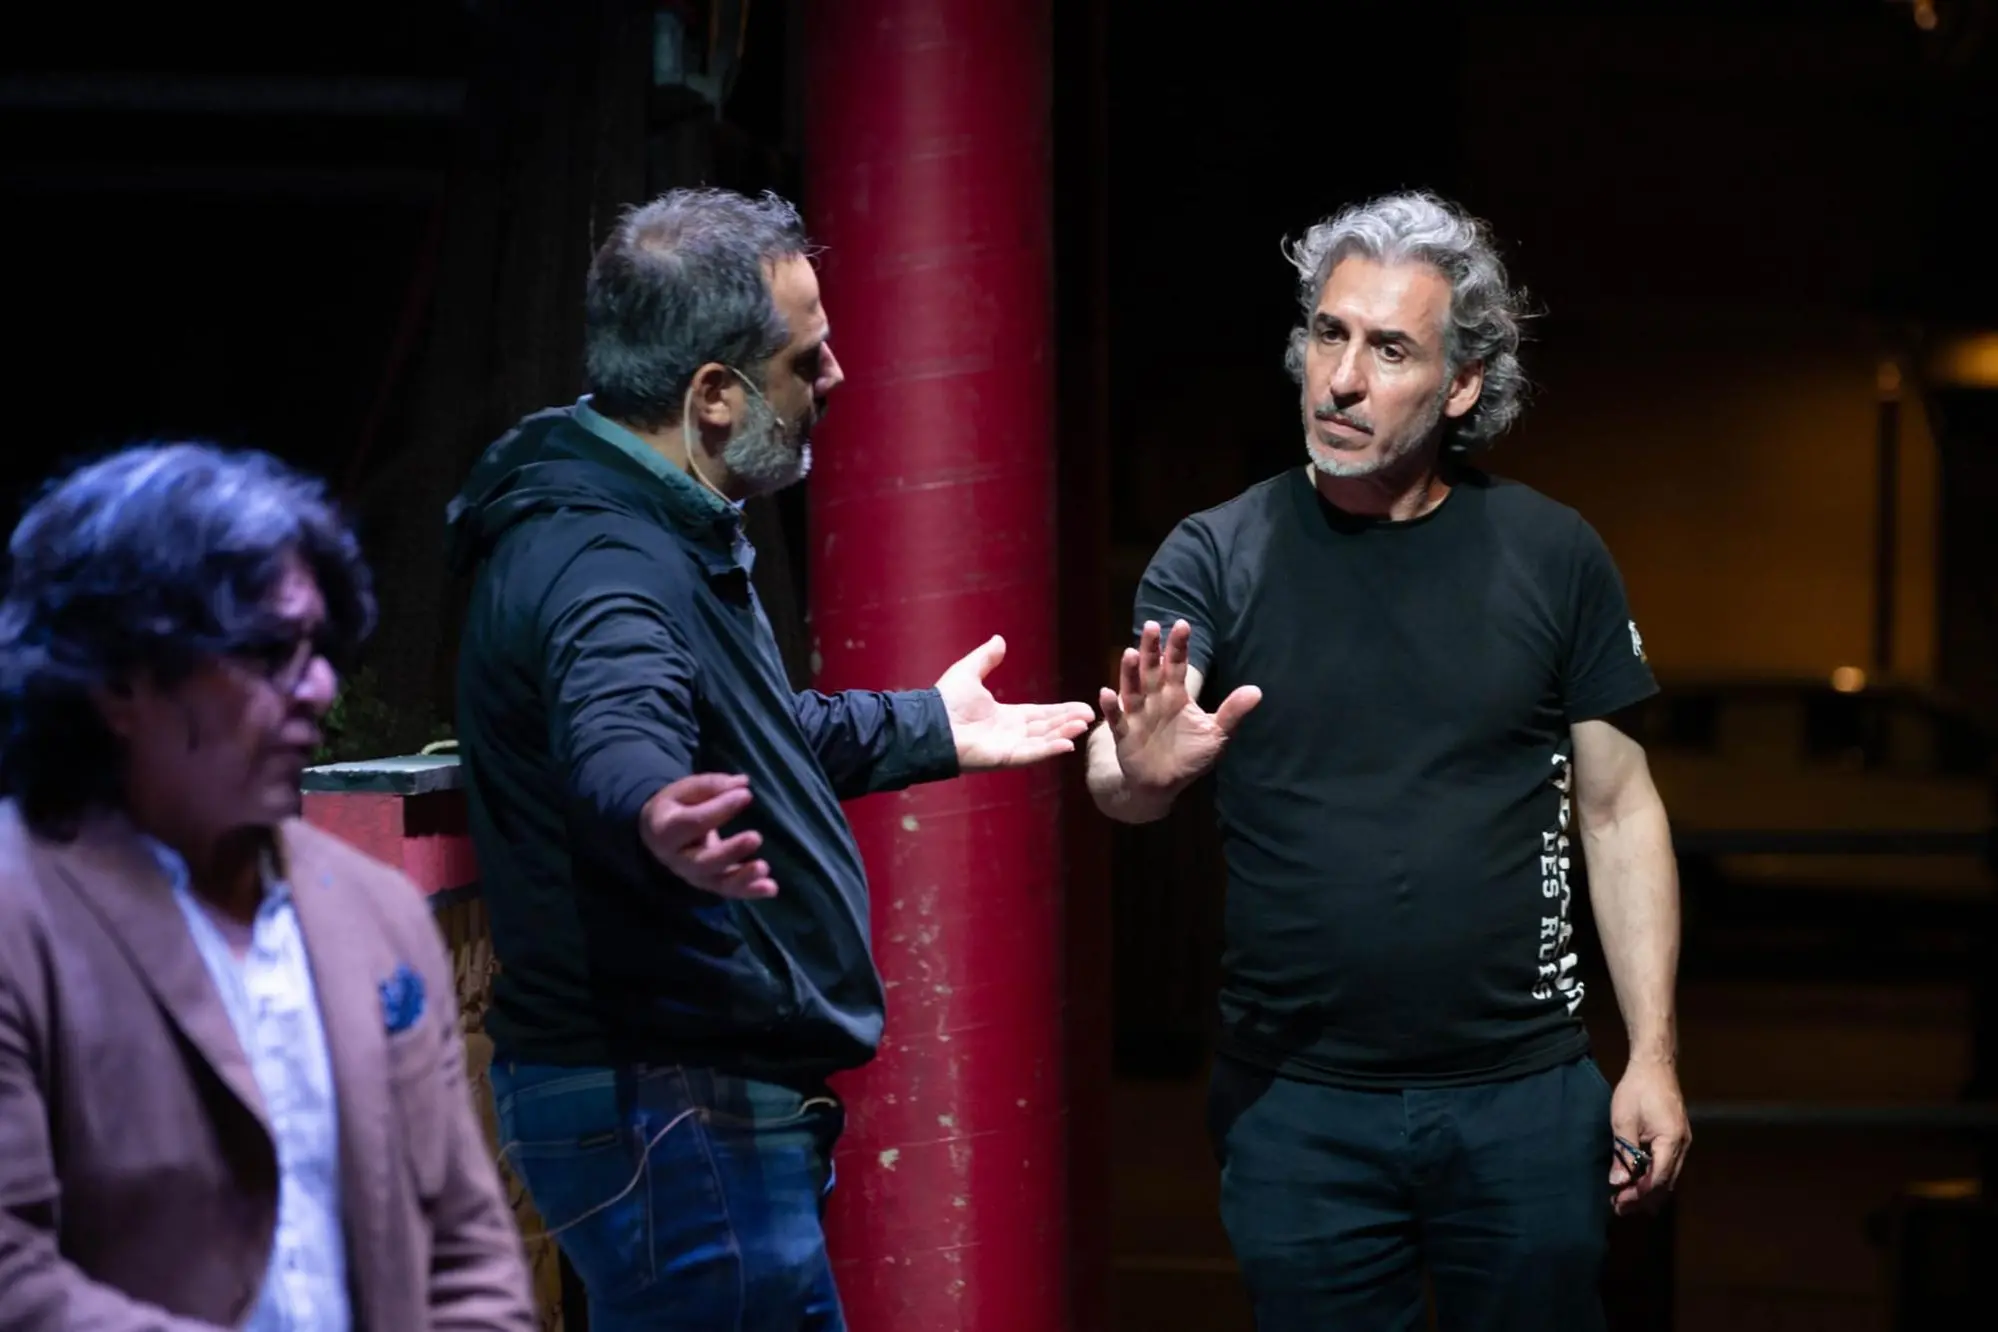 Il regista Gazale, a destra, mentre dirige gli artisti (foto concessa da Elisa Casula)